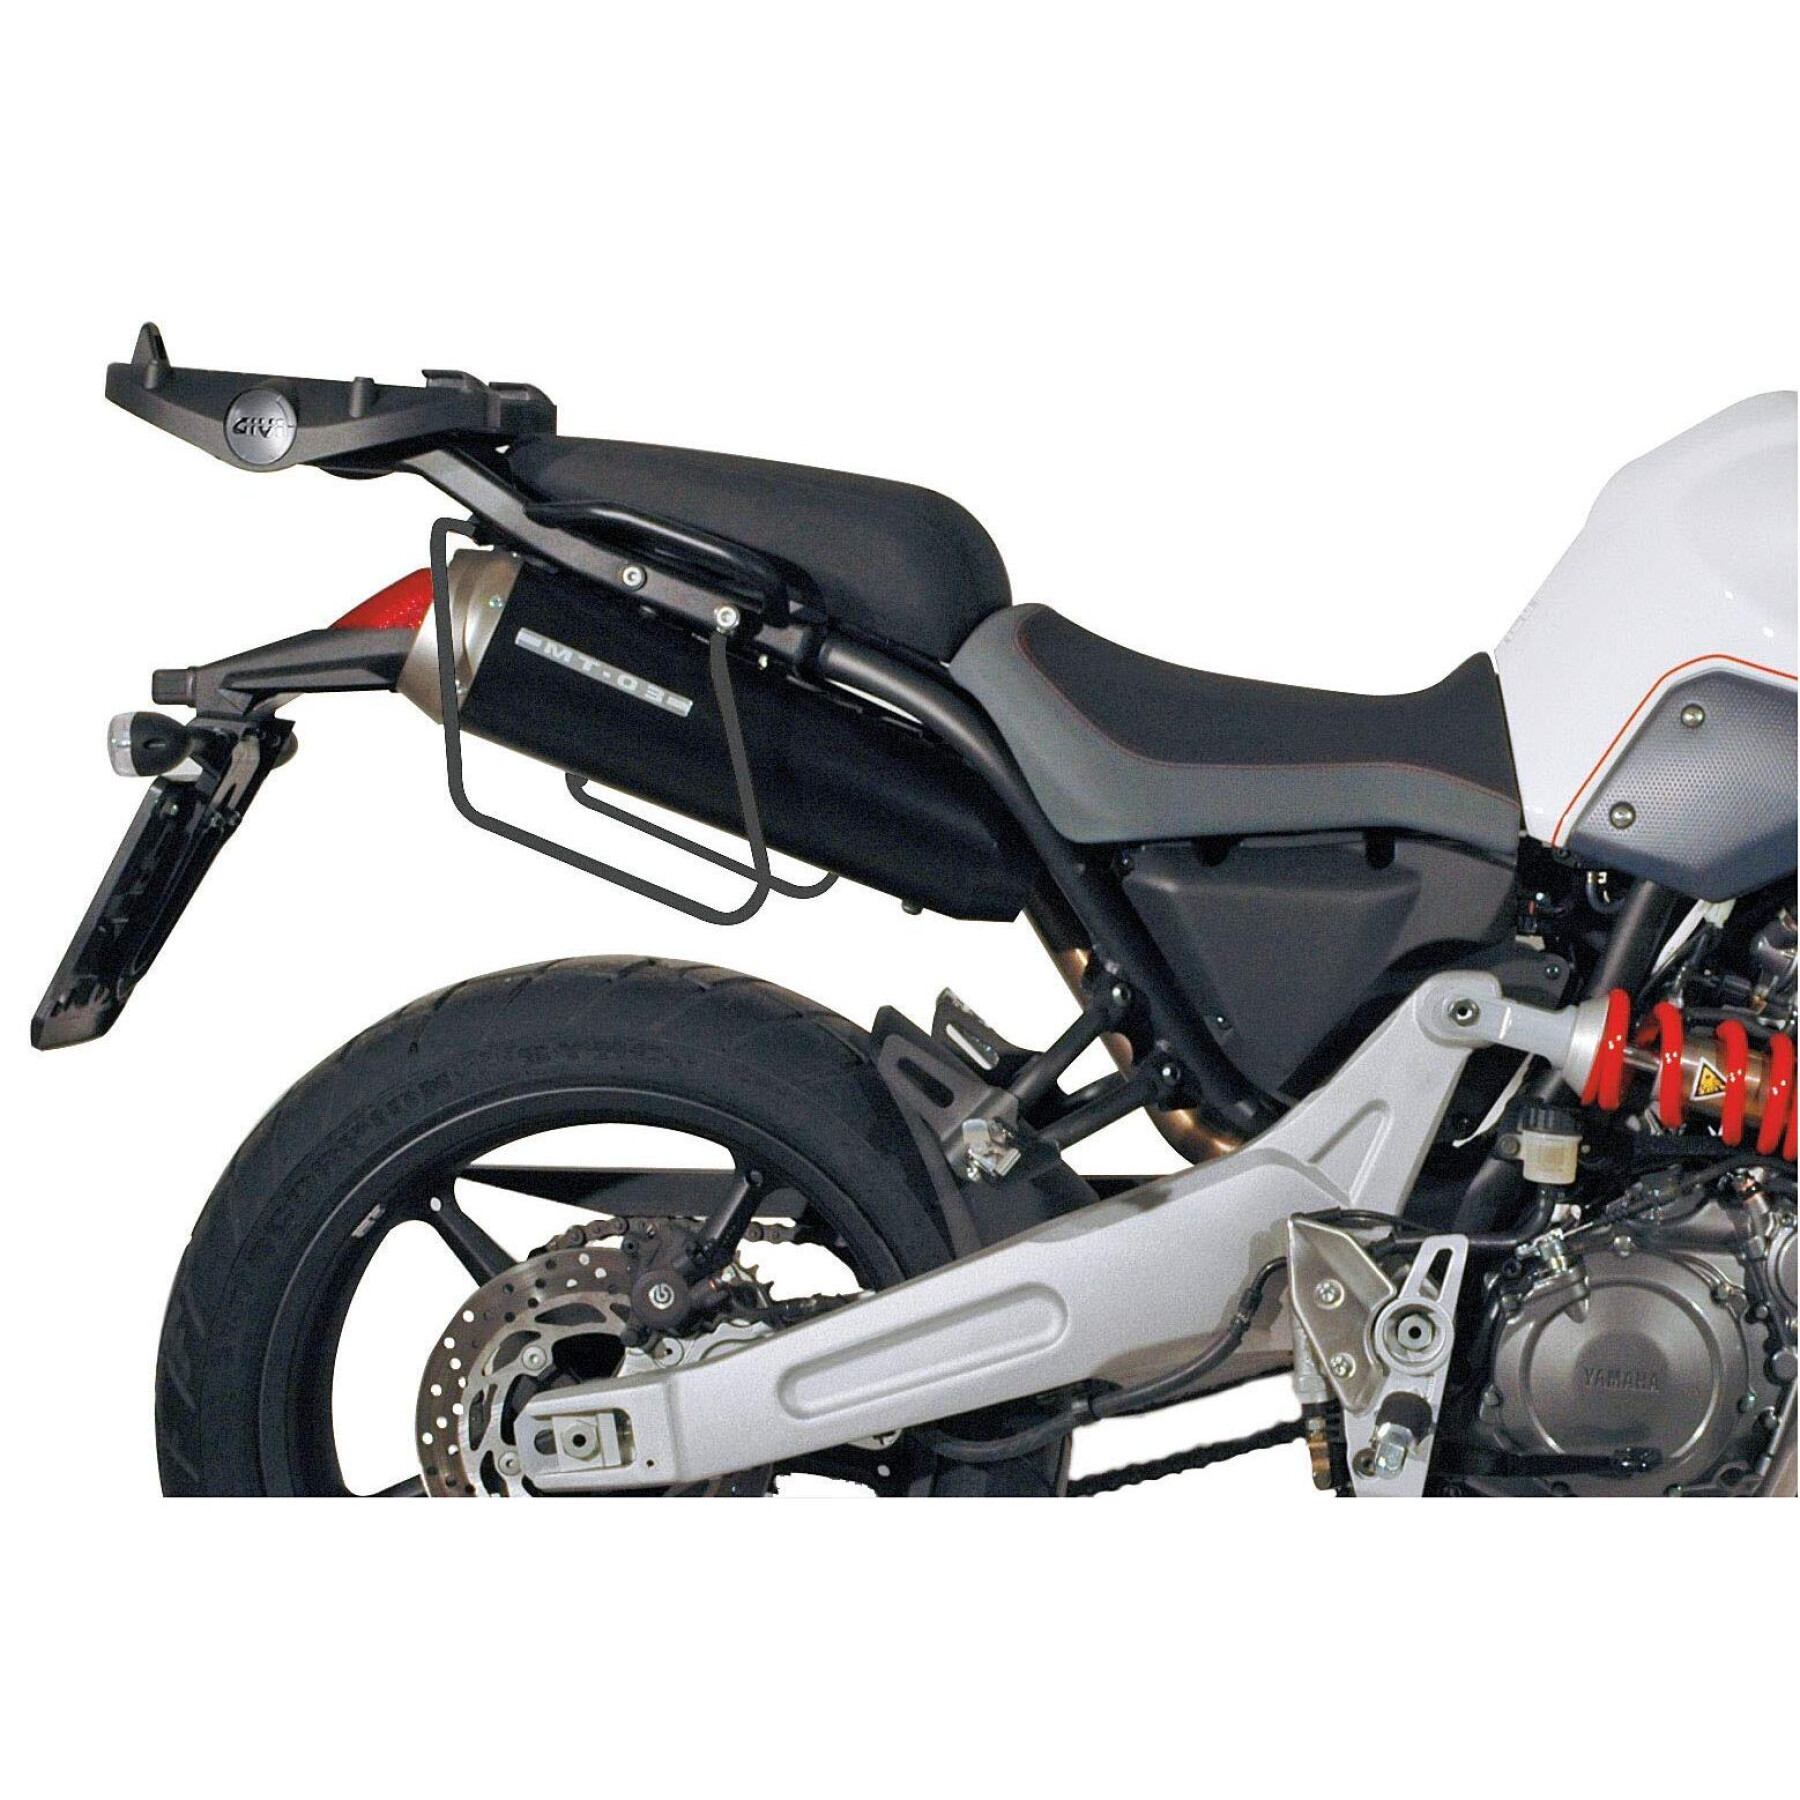 espaçadores de cesto de motocicletas Givi Easylock Benelli Leoncino 500 (17 à 20)